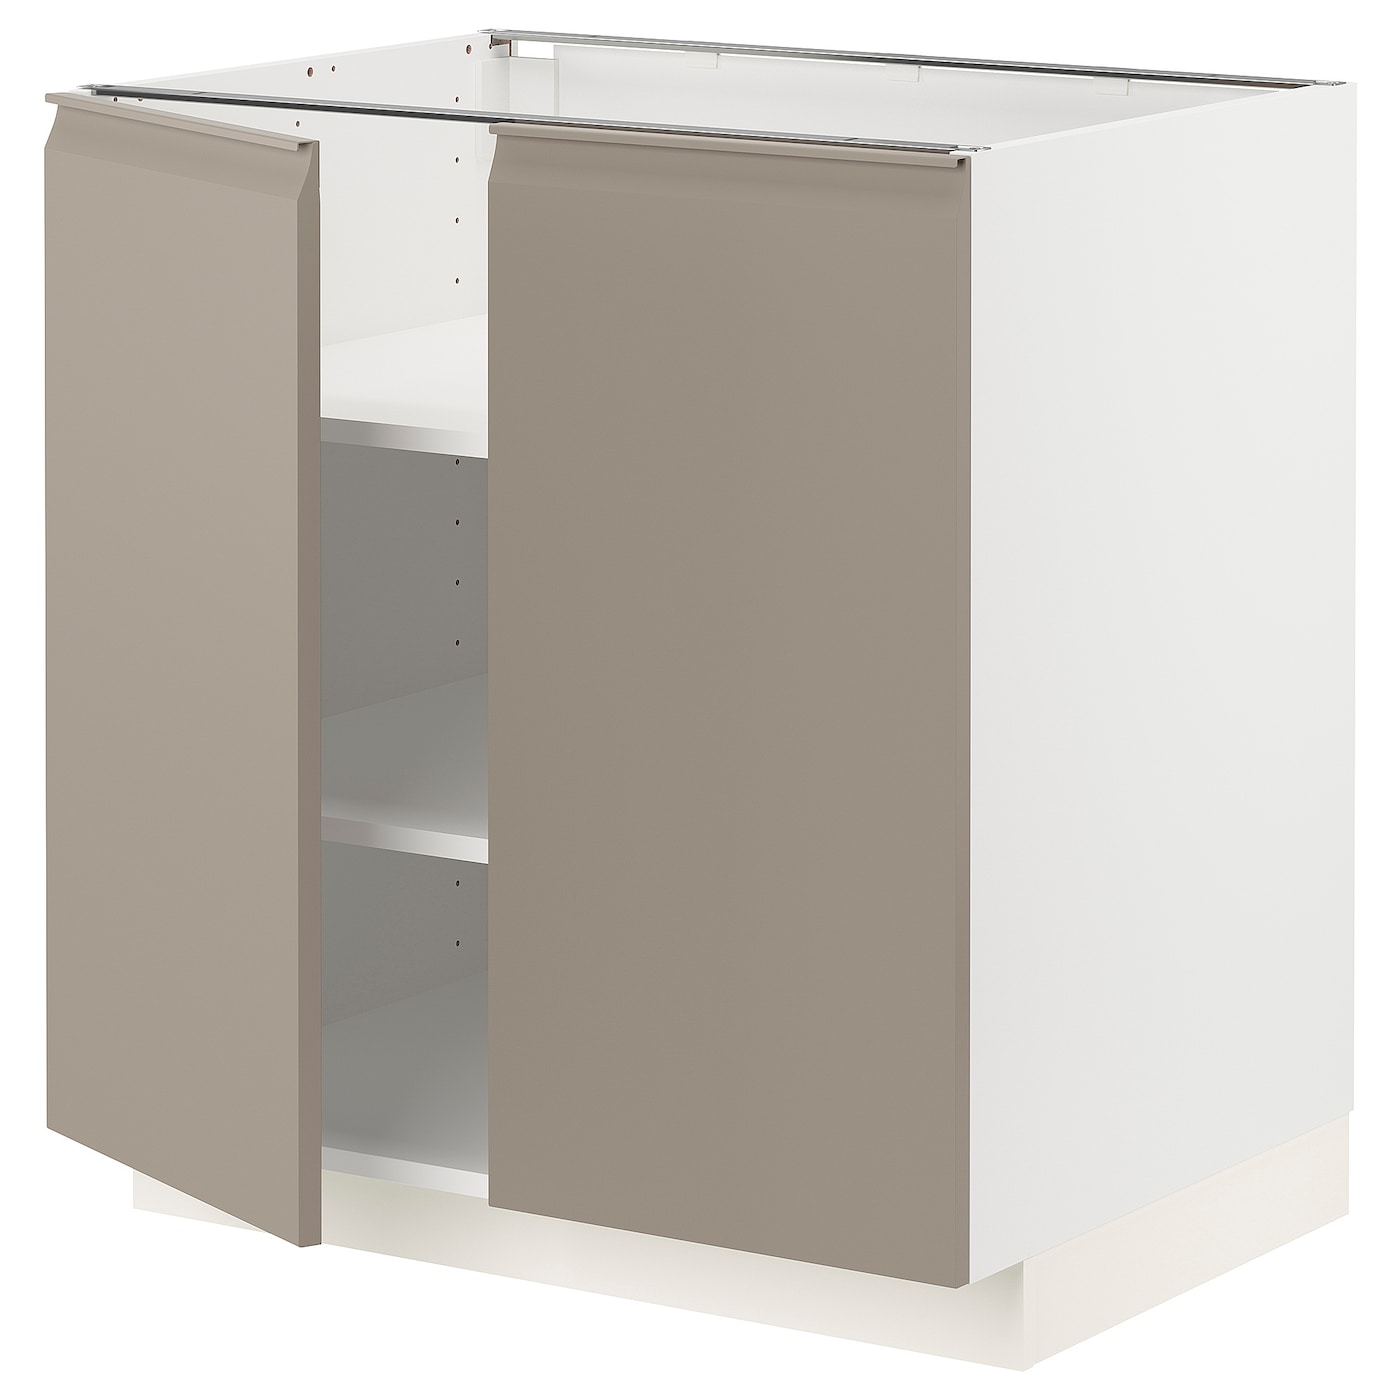 Напольный шкаф  - IKEA METOD, 88x62x80см, белый/темно-бежевый, МЕТОД ИКЕА